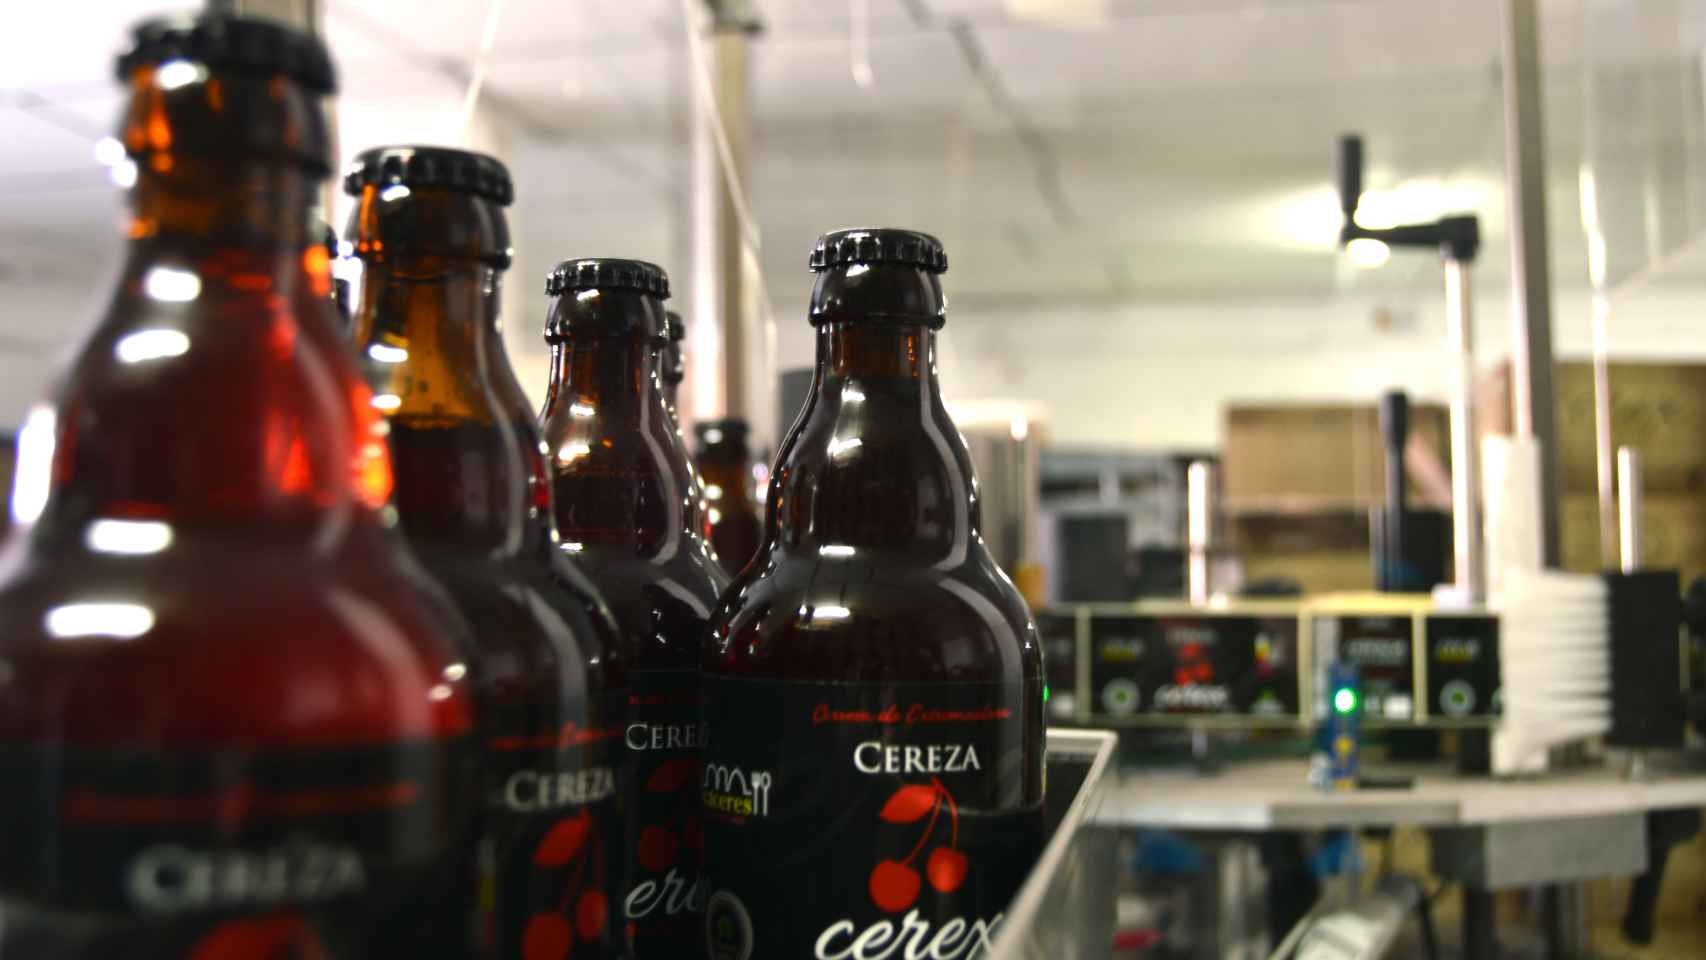 Cerveza Cerex consiguió el premio a la Mejor Cerveza Artesana de España en 2015.